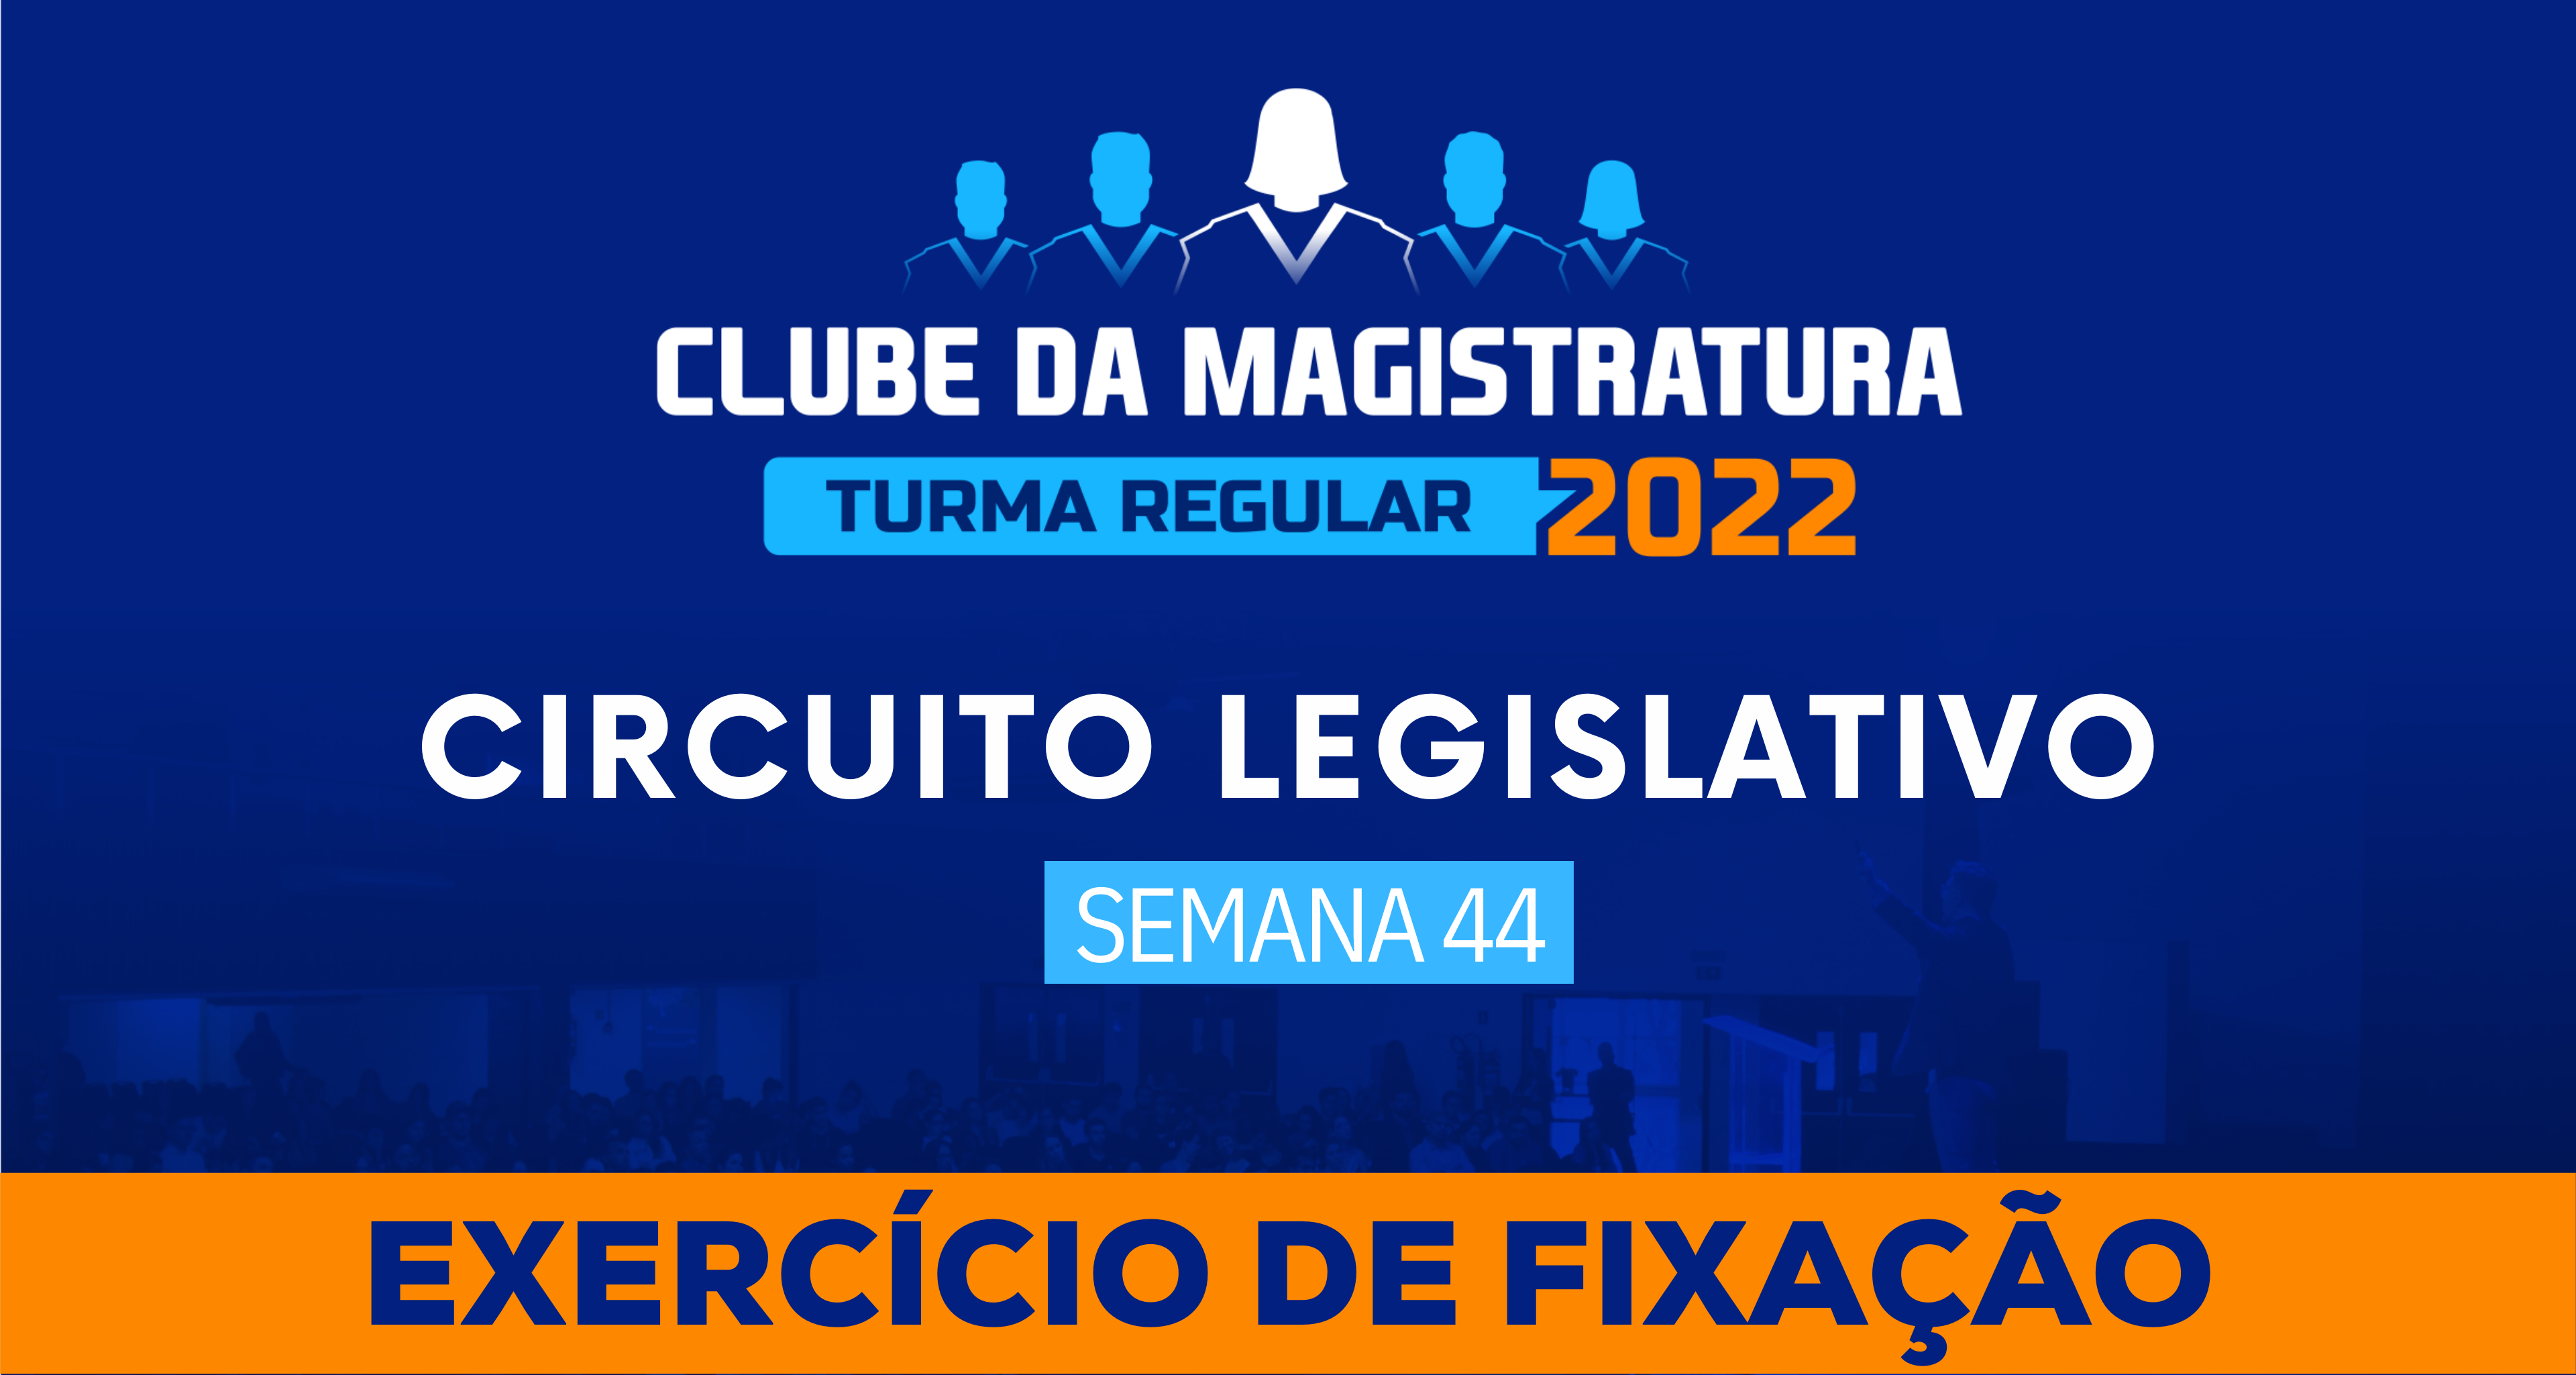 Circuito Legislativo 2022.1 (Clube da Magistratura - Semana 44)